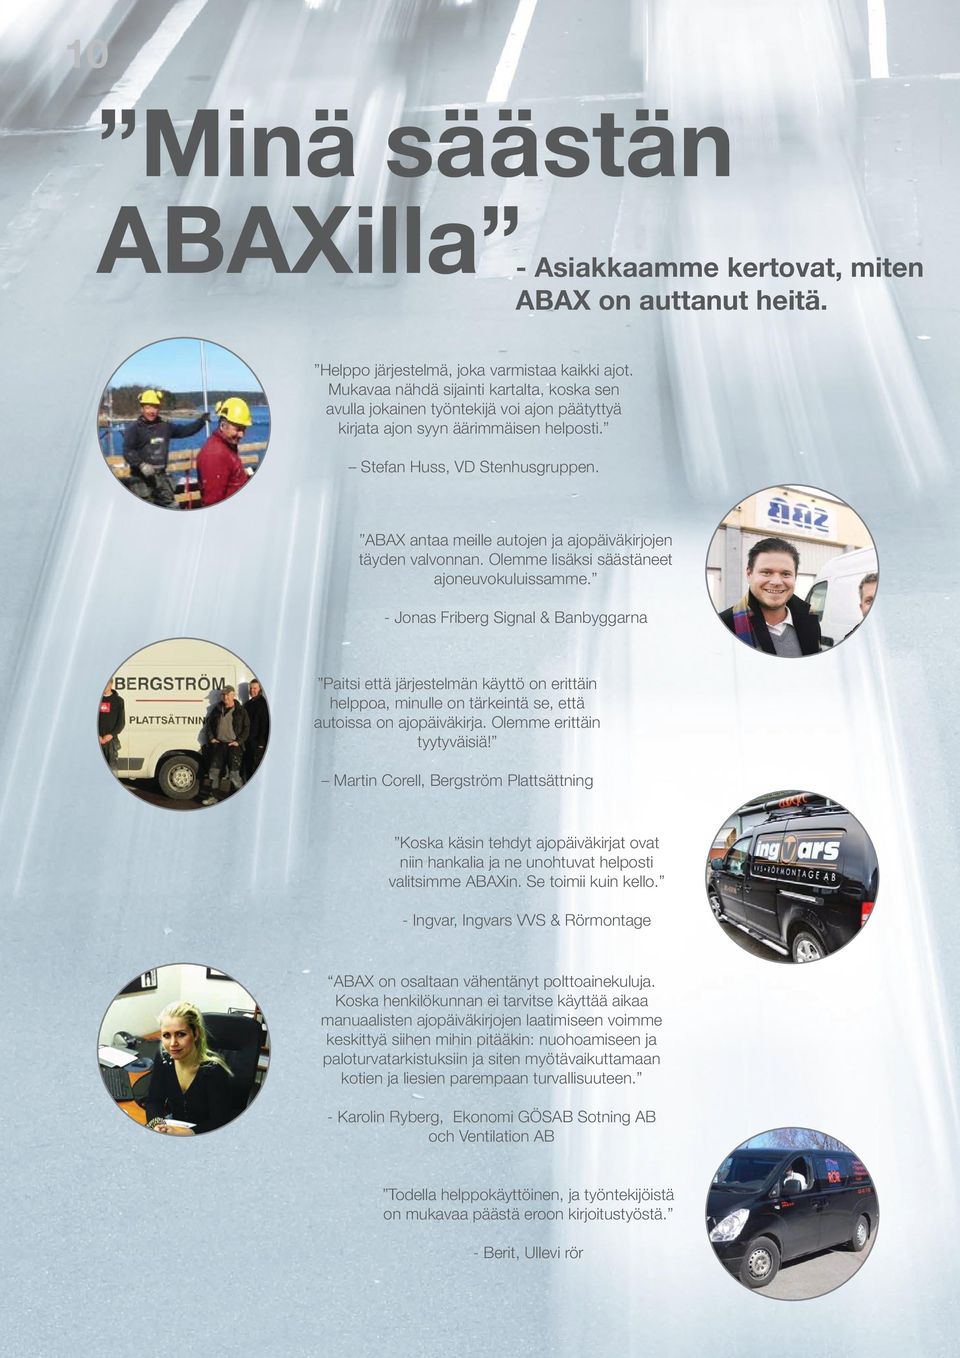 ABAX antaa meille autojen ja ajopäiväkirjojen täyden valvonnan. Olemme lisäksi säästäneet ajoneuvokuluissamme.